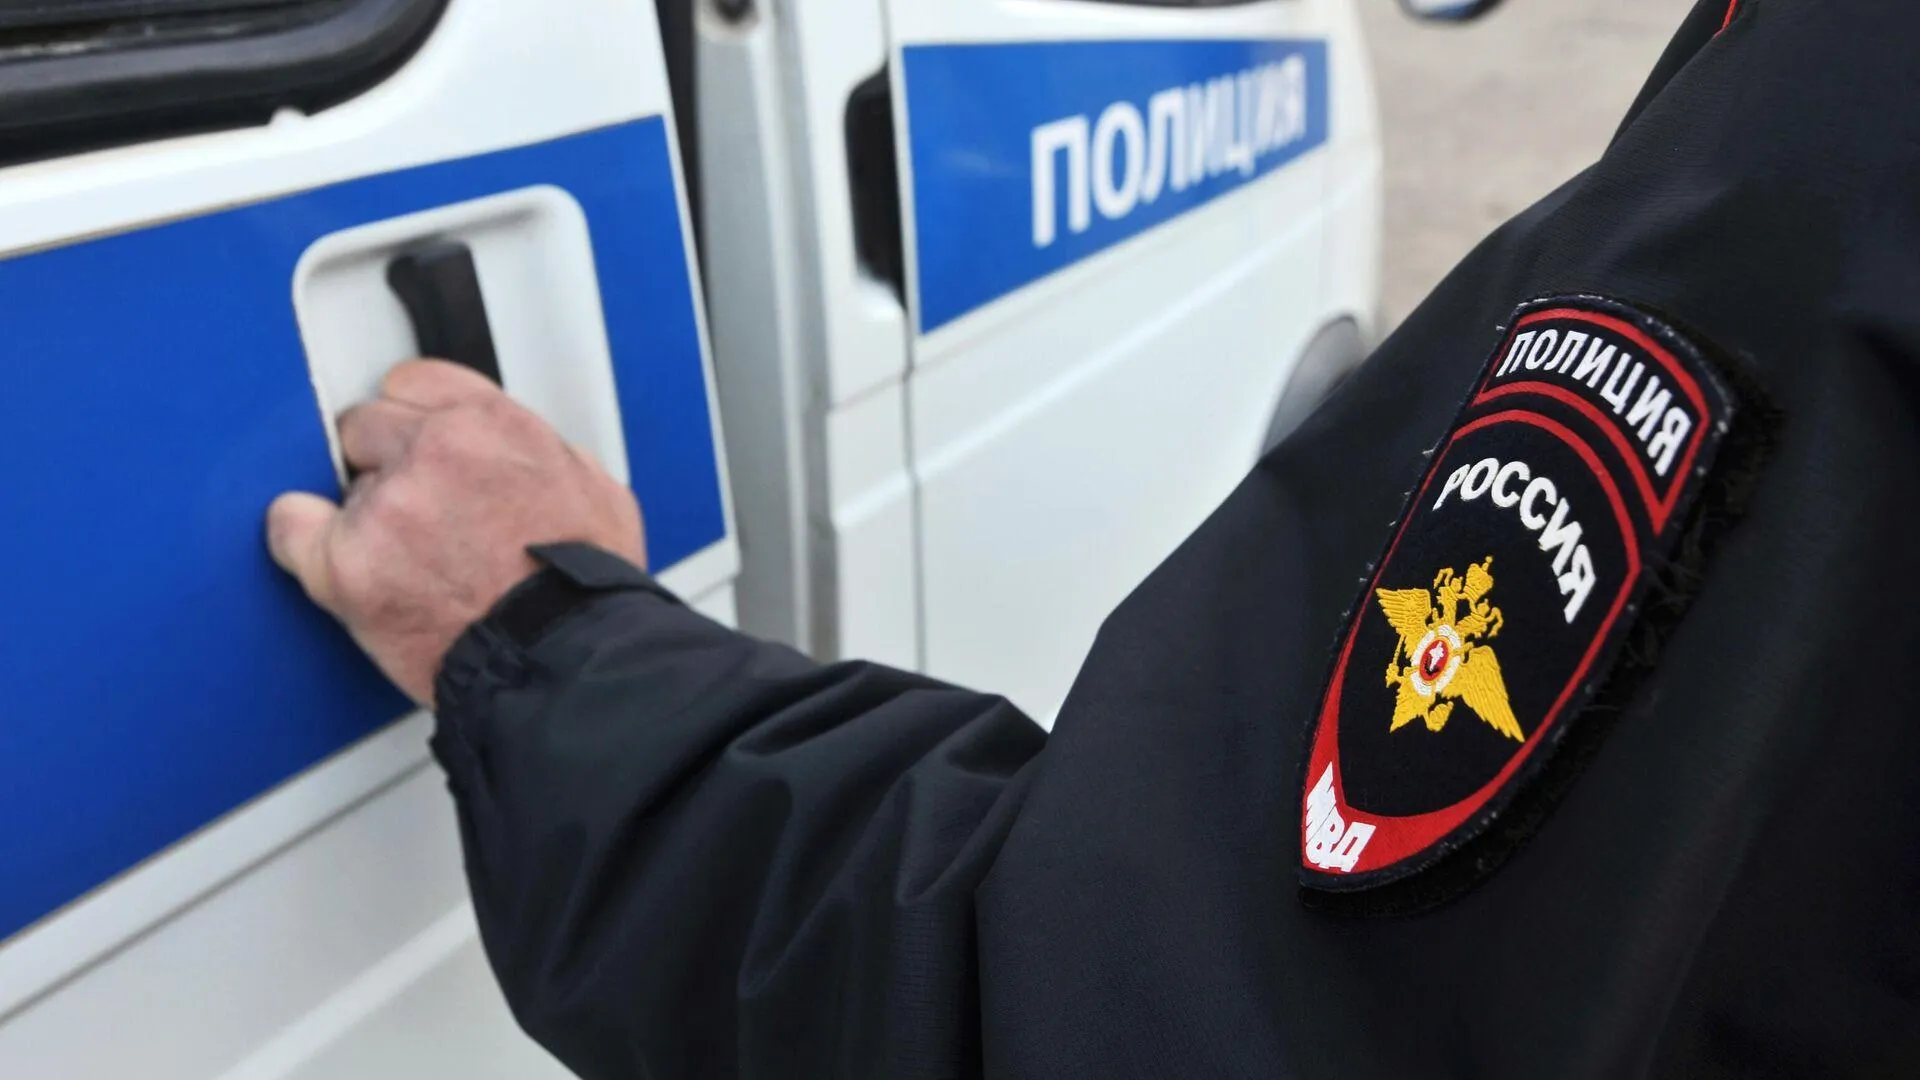 Конфликт в караоке привел к задержанию 4 человек в Новой Москве